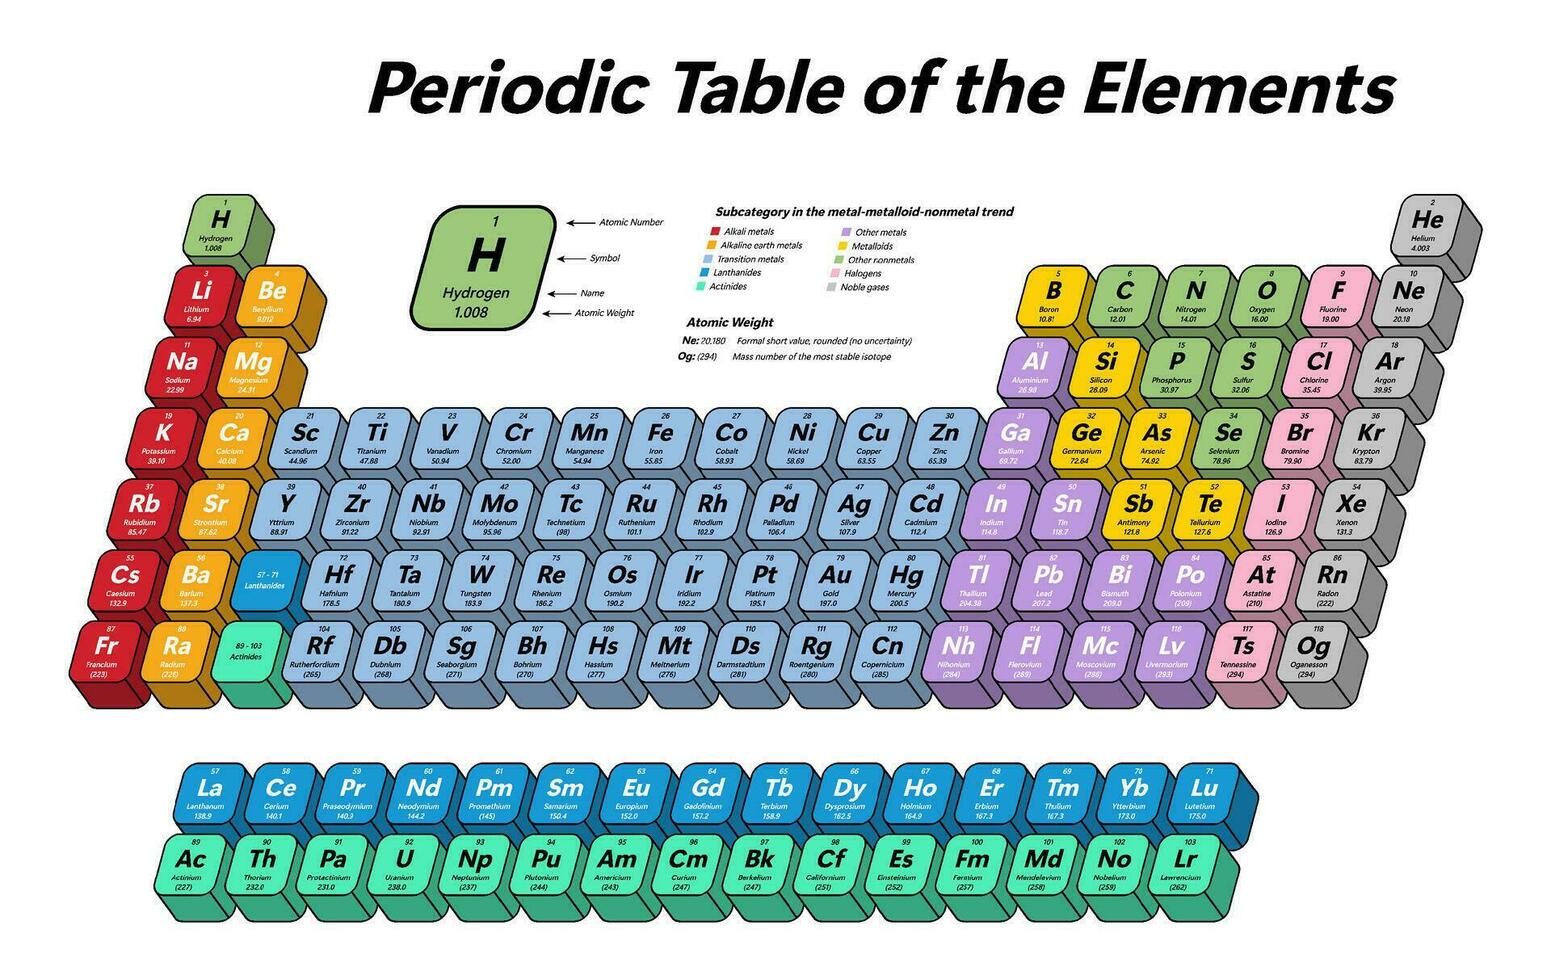 kleurrijk periodiek tafel van de elementen - shows atomair nummer, symbool, naam, atomair gewicht en element categorie vector